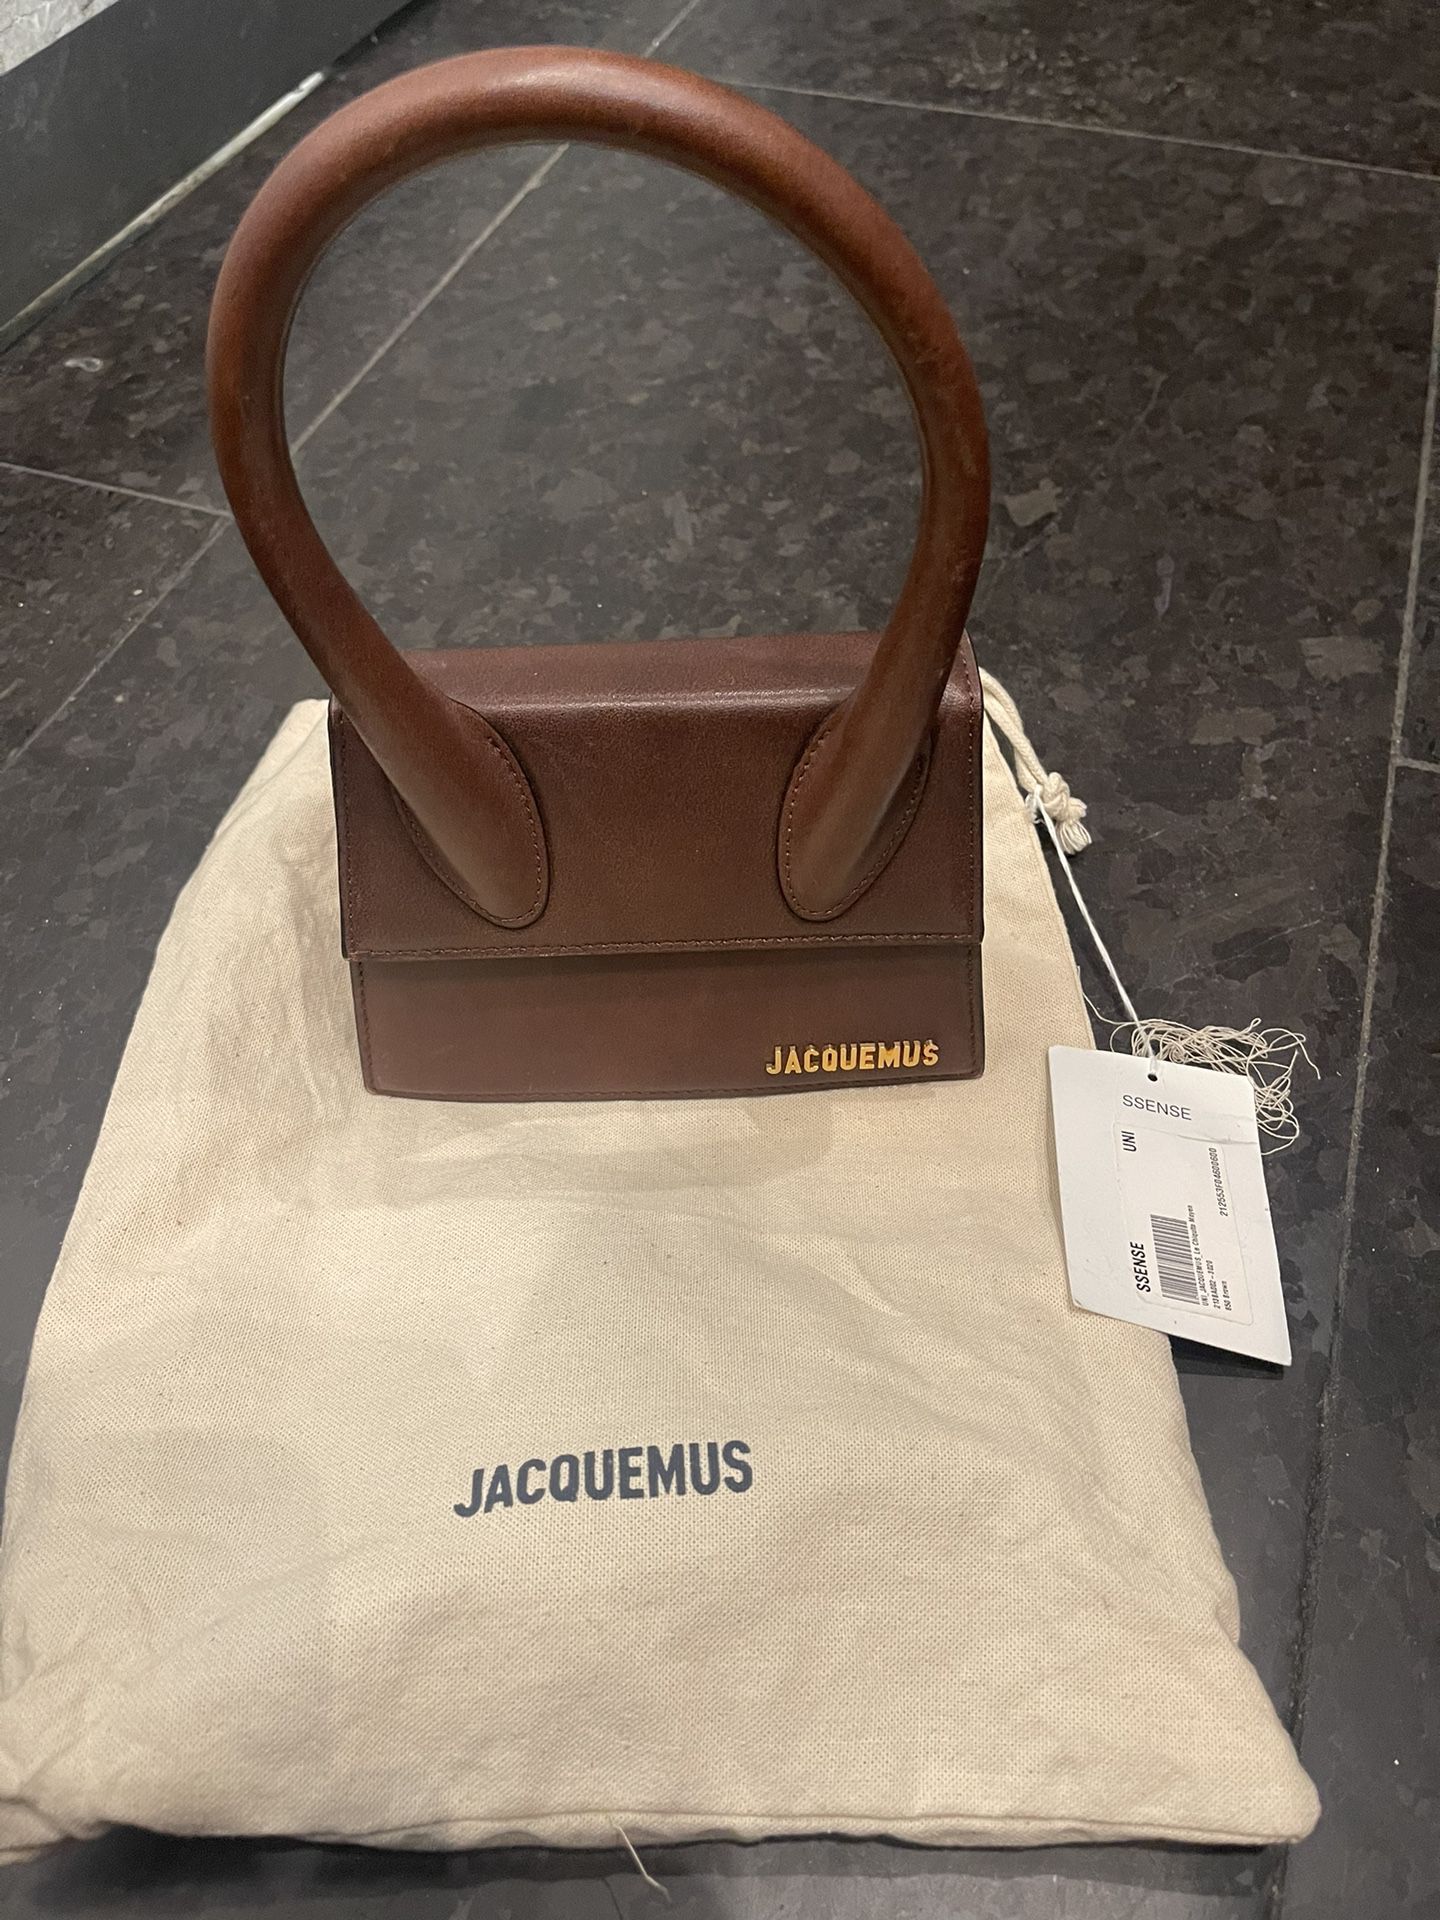 Jacquemus Le Papier Le Chiquito Bag